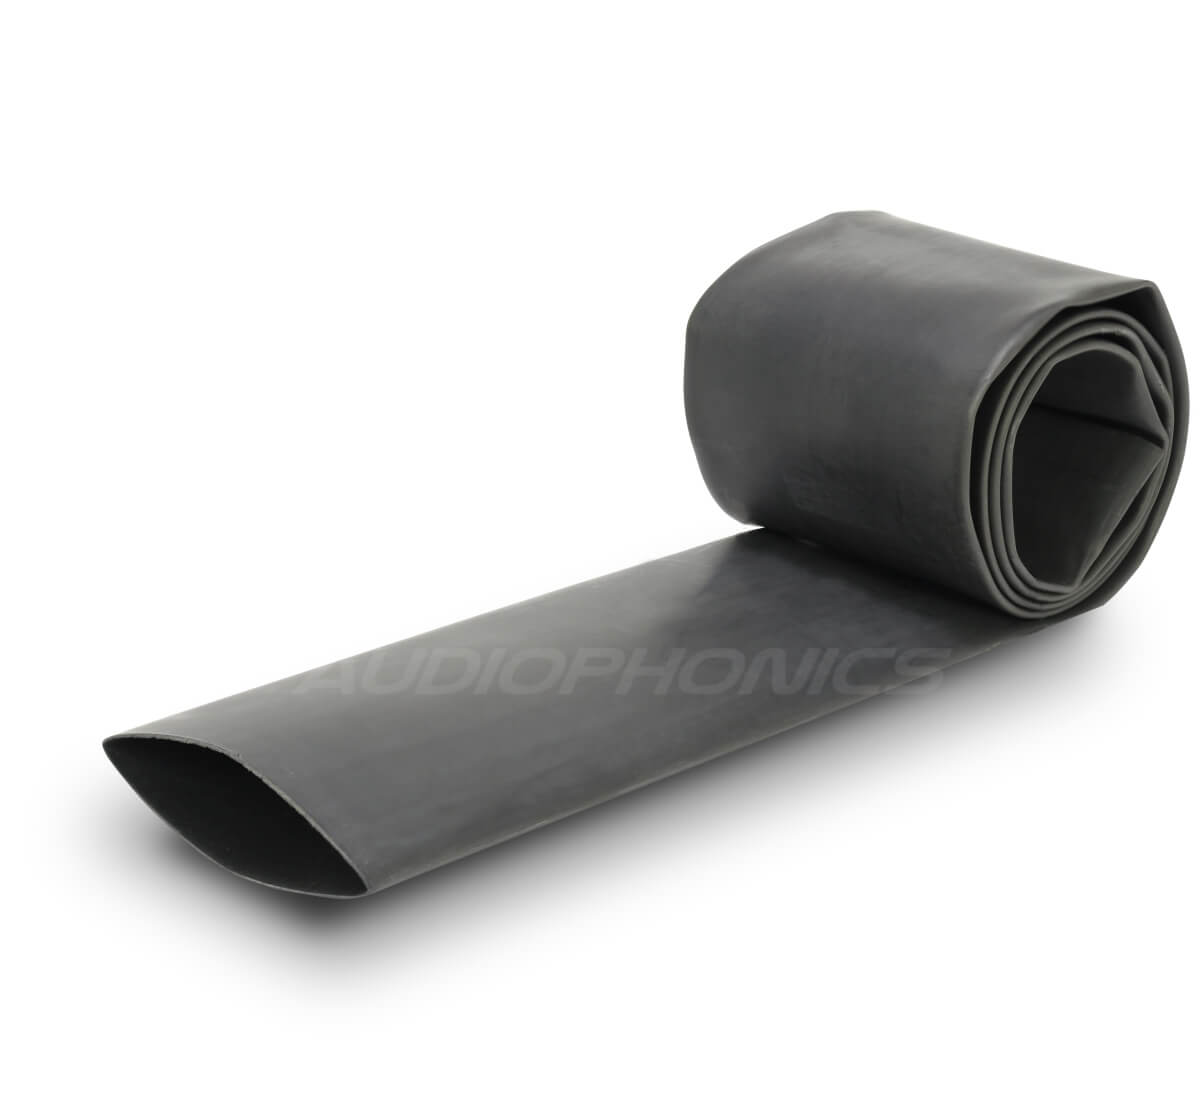 Heat-shrink tubing 4: 1 Ø16.0mm Black (1m)